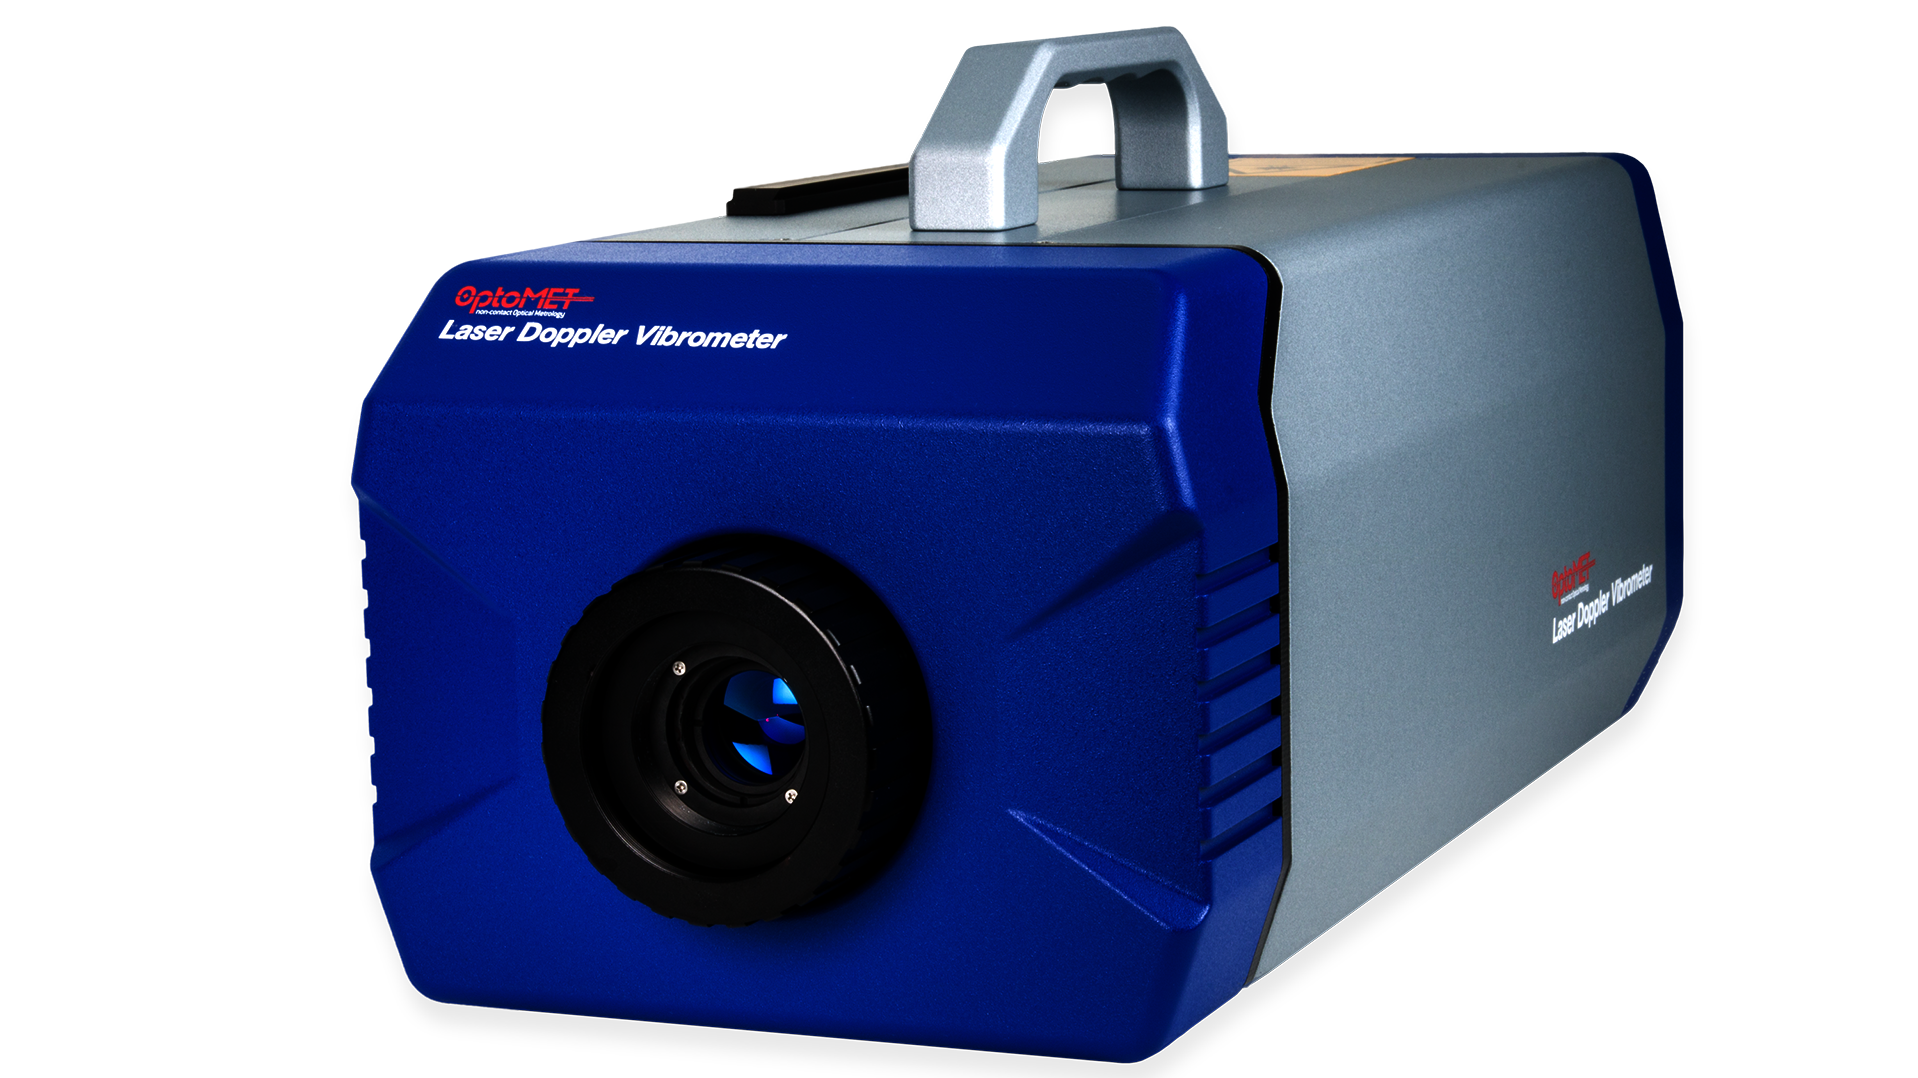 Abgebildet wir ein Vector Laser Vibrometer mit einer blauen Fornt, in der eine Kameralinse eingebaut ist. Der Korpus des Gerätes ist in grau. In der oberen Mitte des Gerätes befindet sich ein Griff, um dieses leicht von a nach b transportieren zu können.